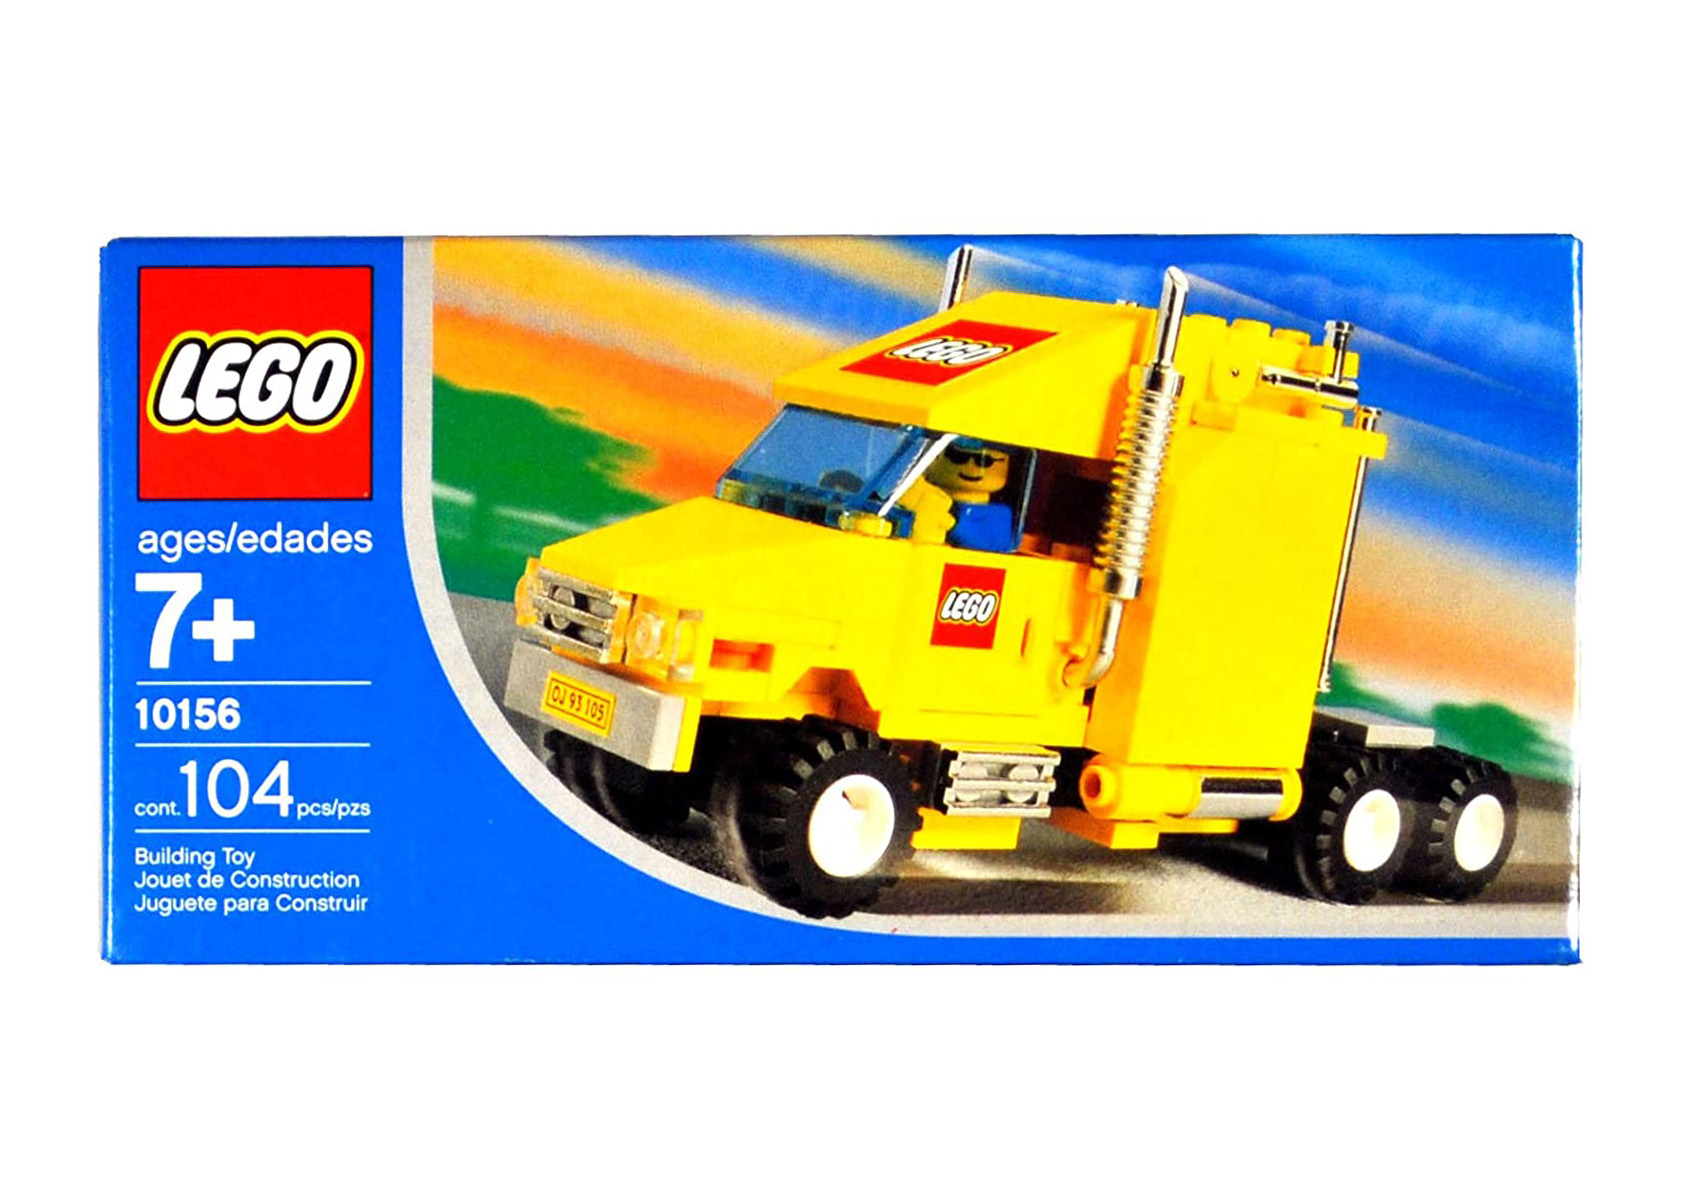 LEGO City Truck Set 10156